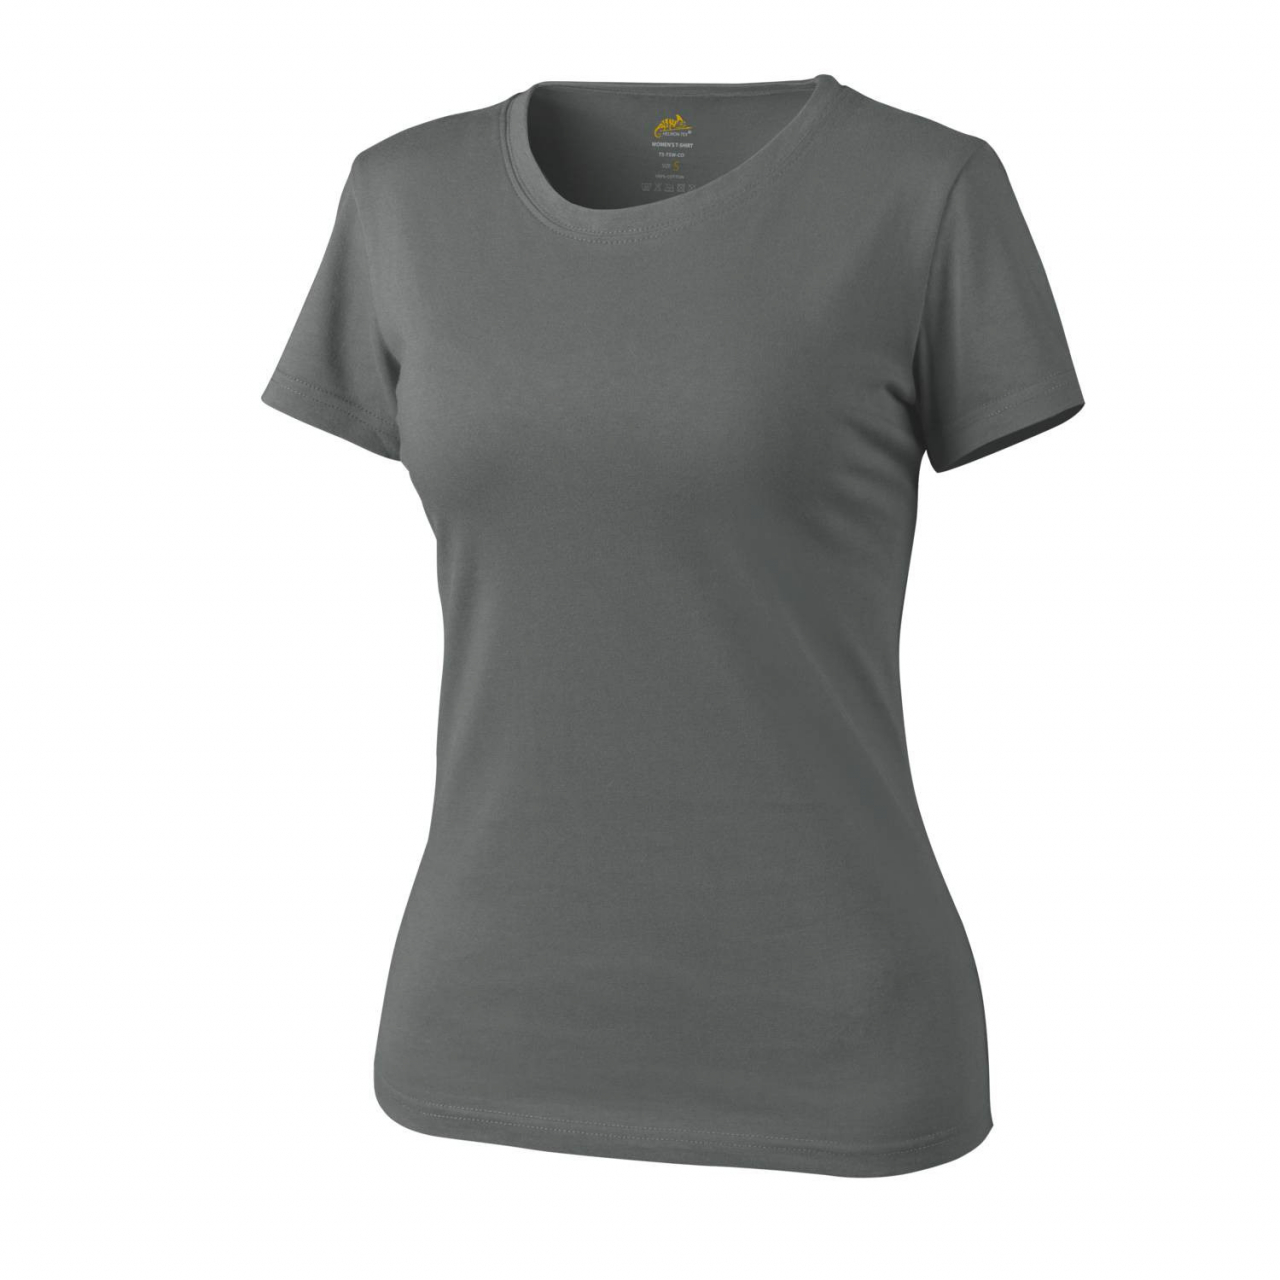 Tričko dámské Helikon Womens Shirt - šedé, S